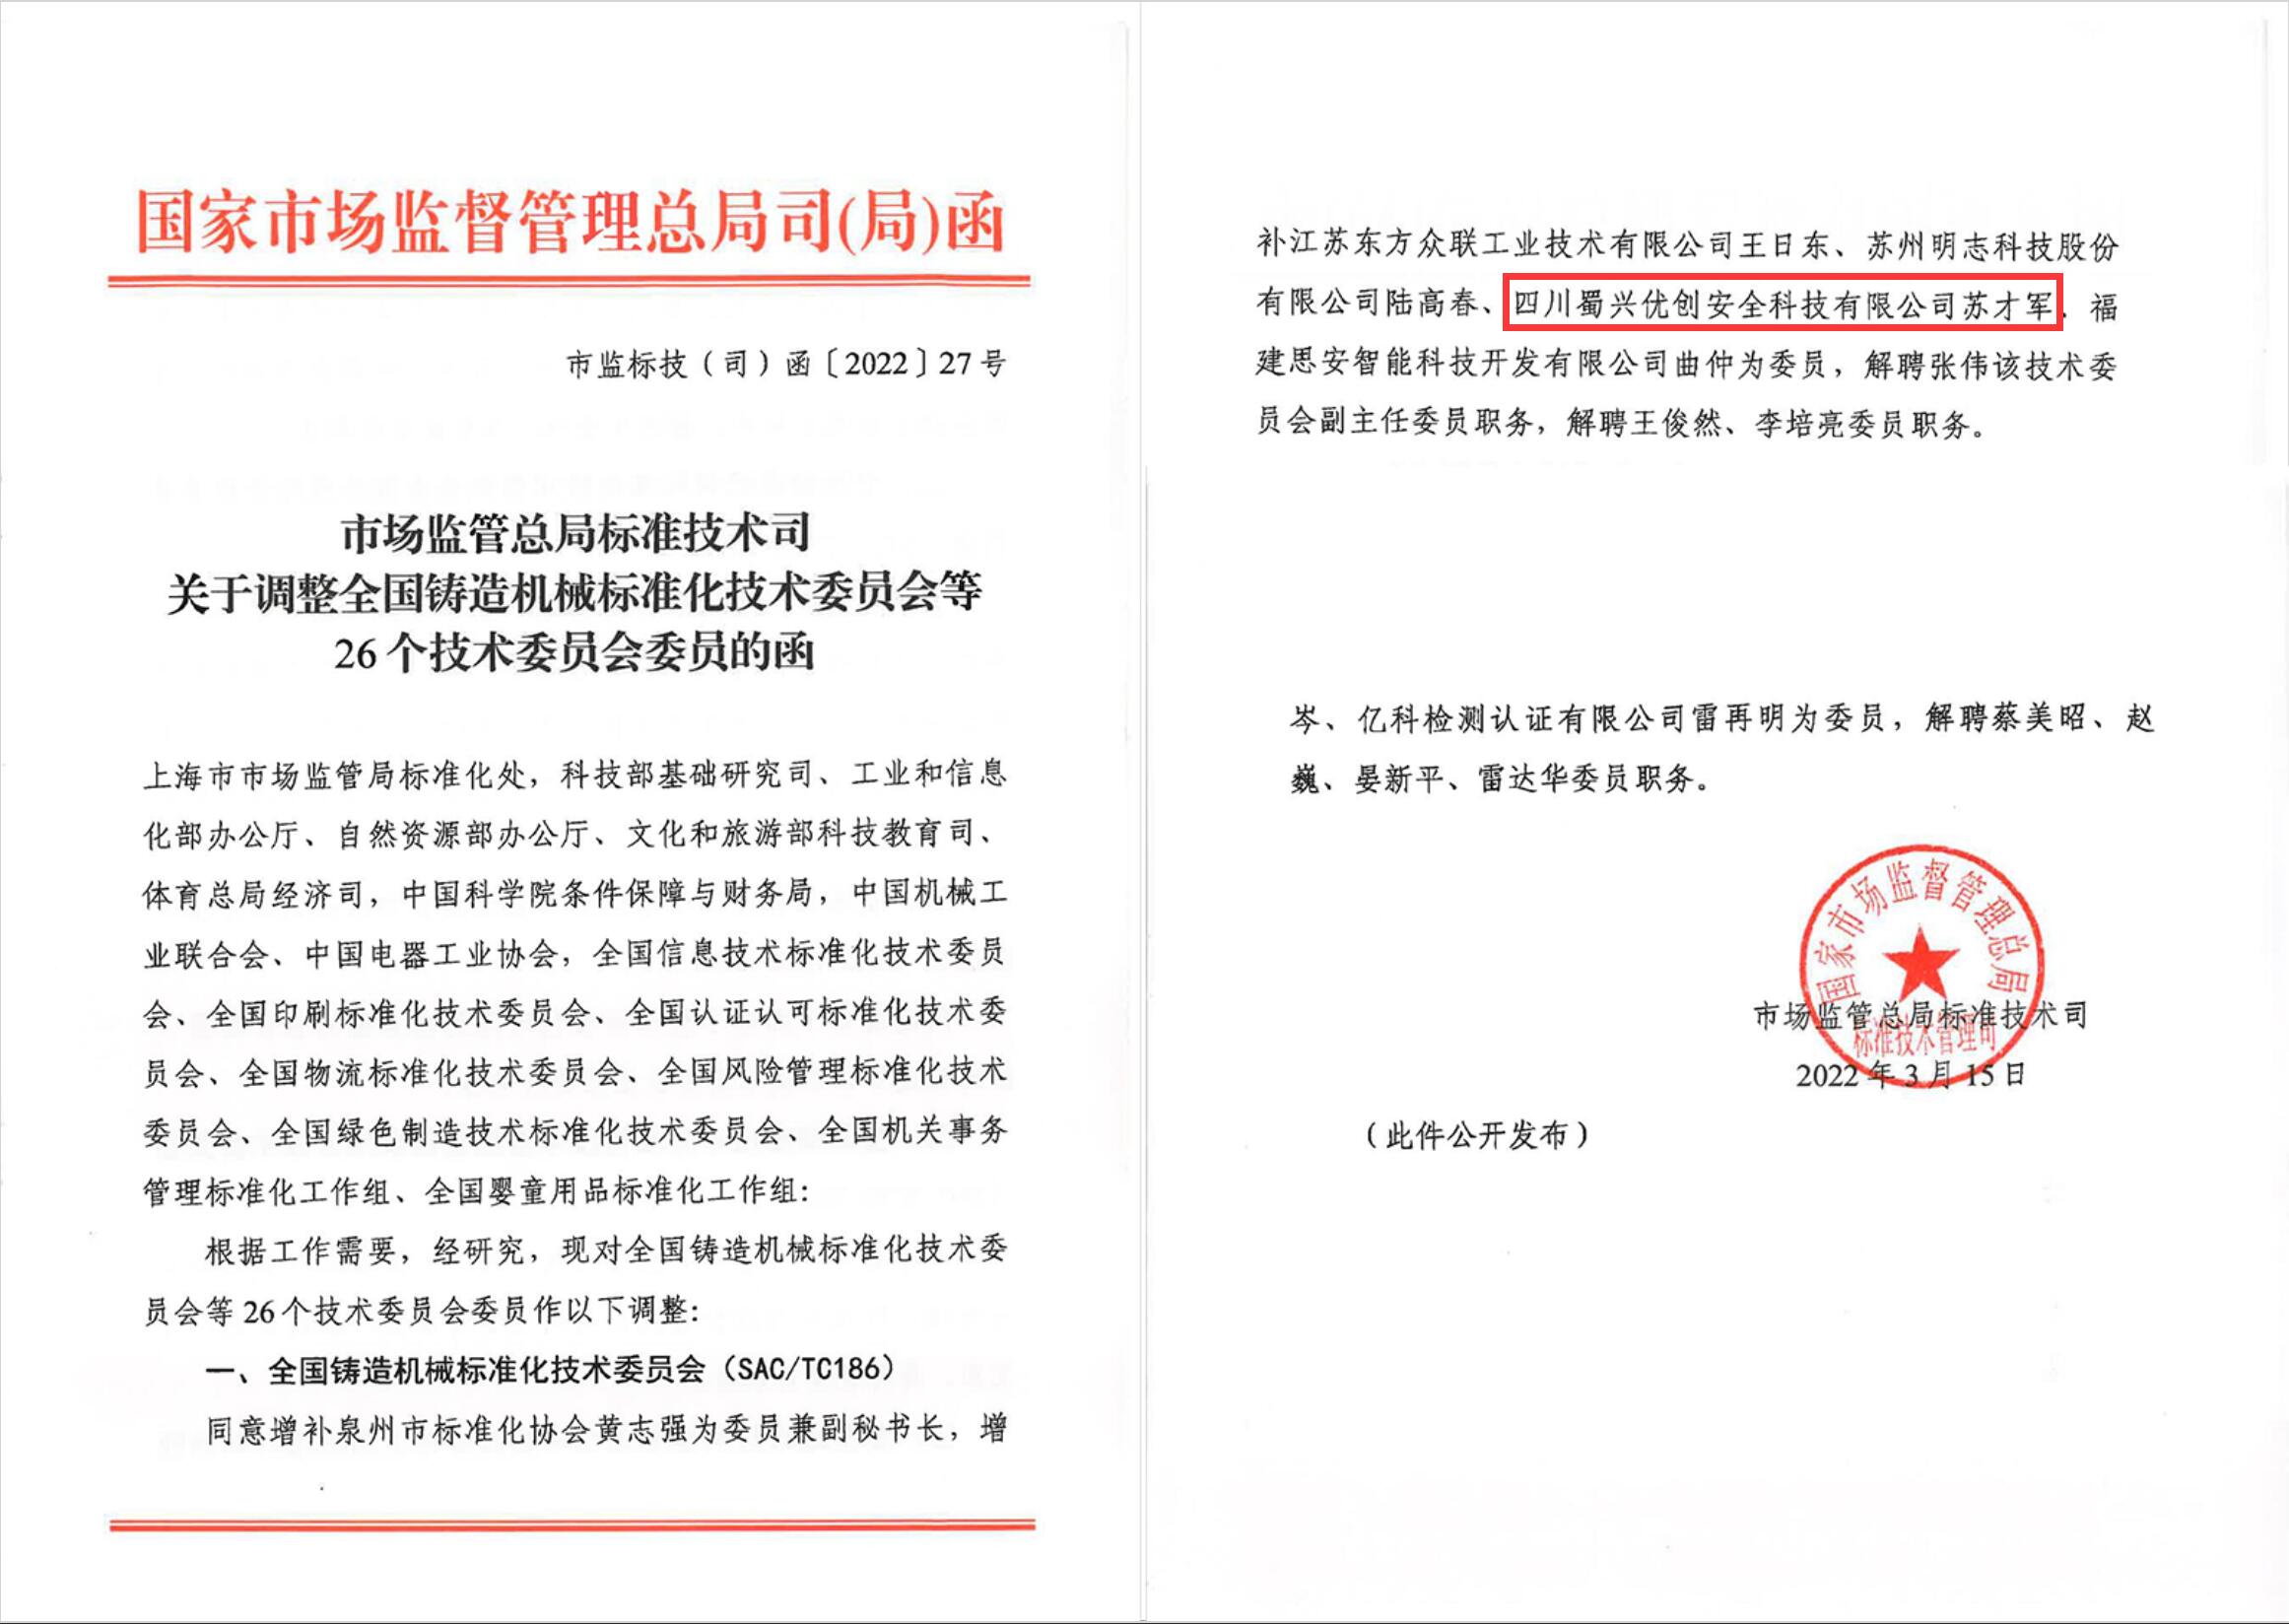 蜀兴优创公司苏才军入选全国铸造机械标准化技术委员会委员